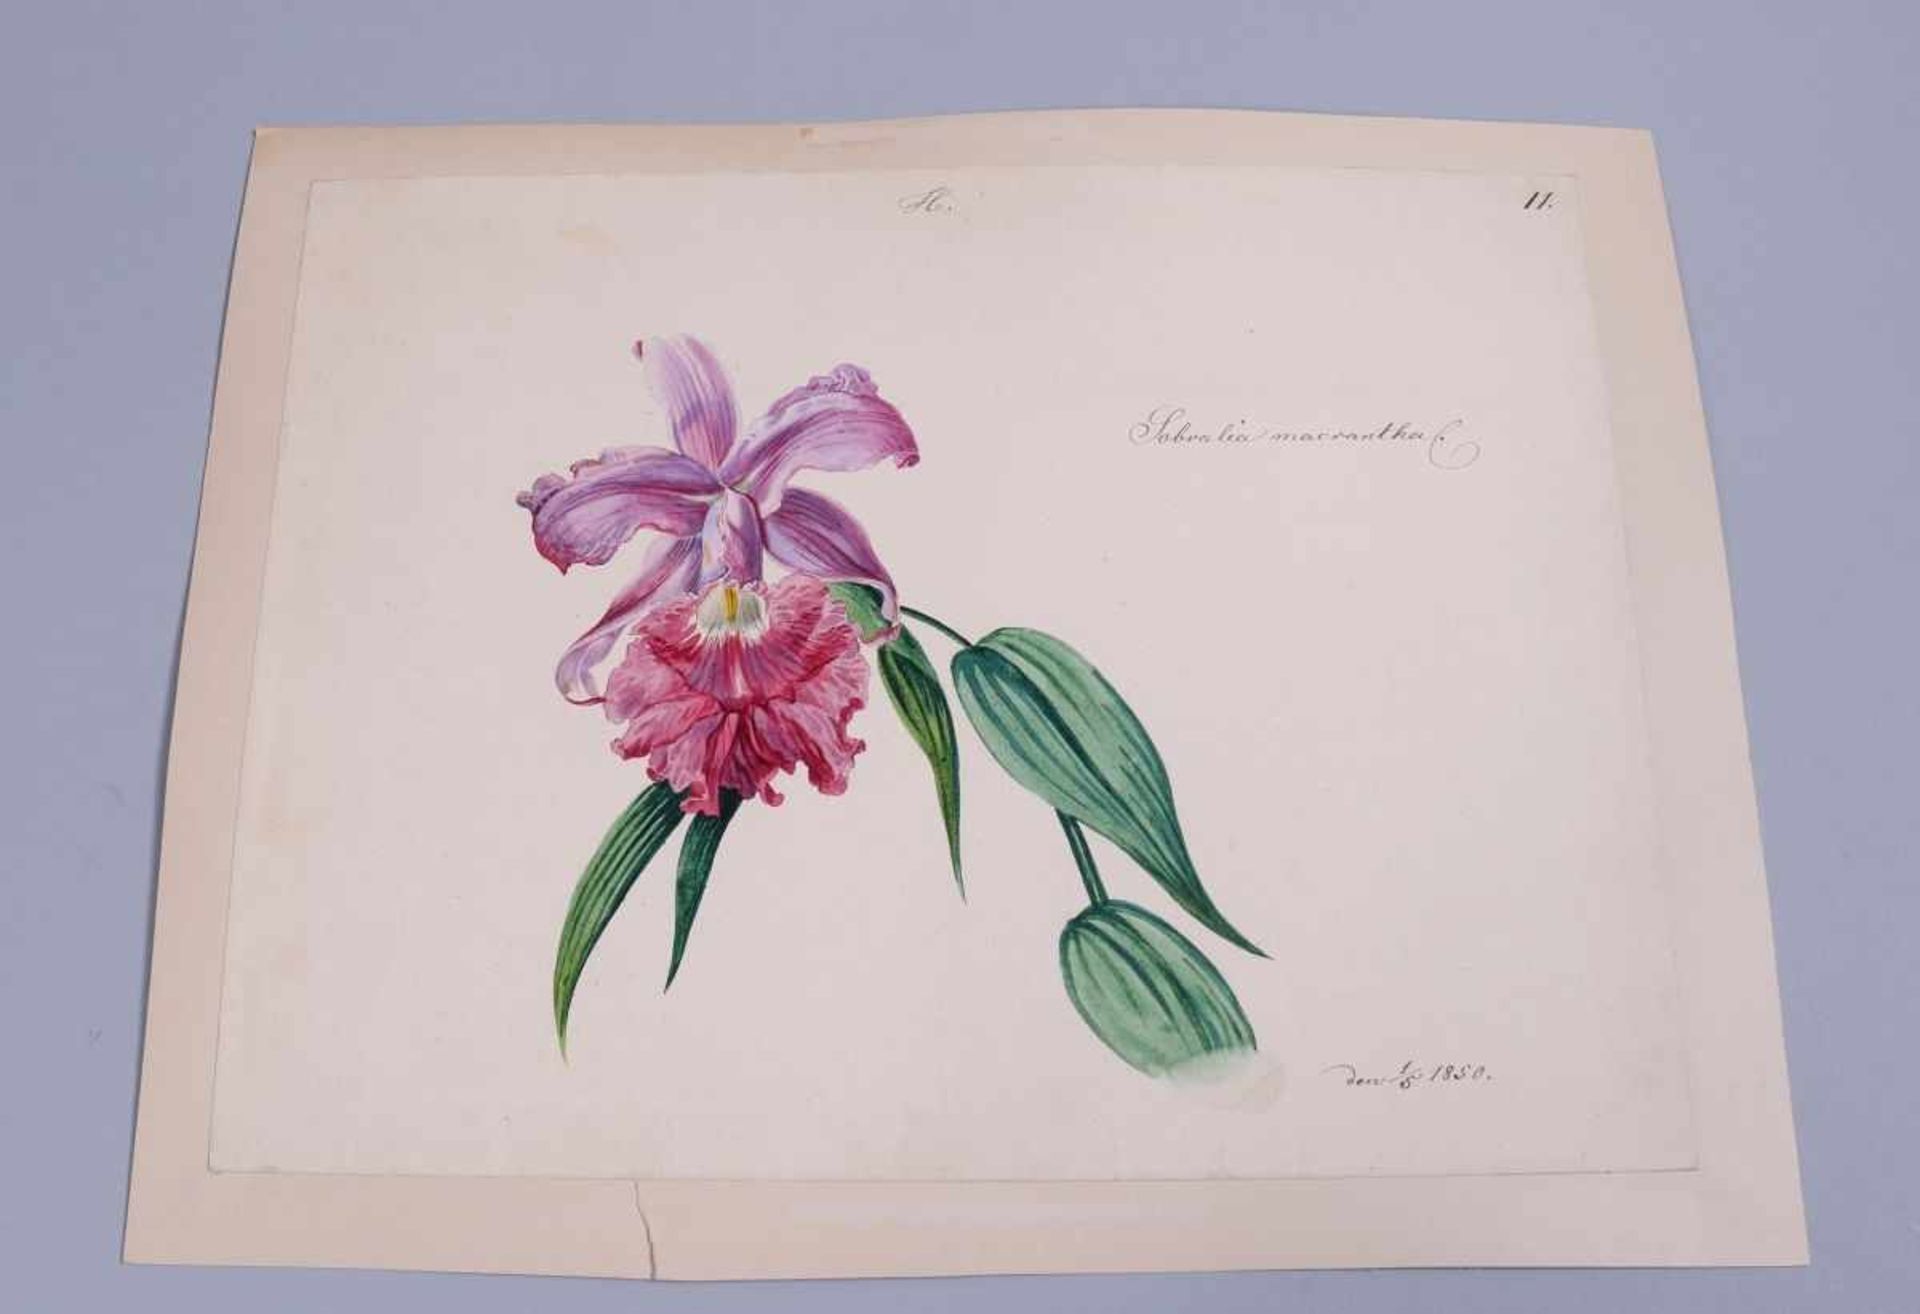 Wohl Ferdinand Michael Lieb(1833 Wien - 1908 Wien), Aquarell/Papier, auf Karton aufgezogen, "